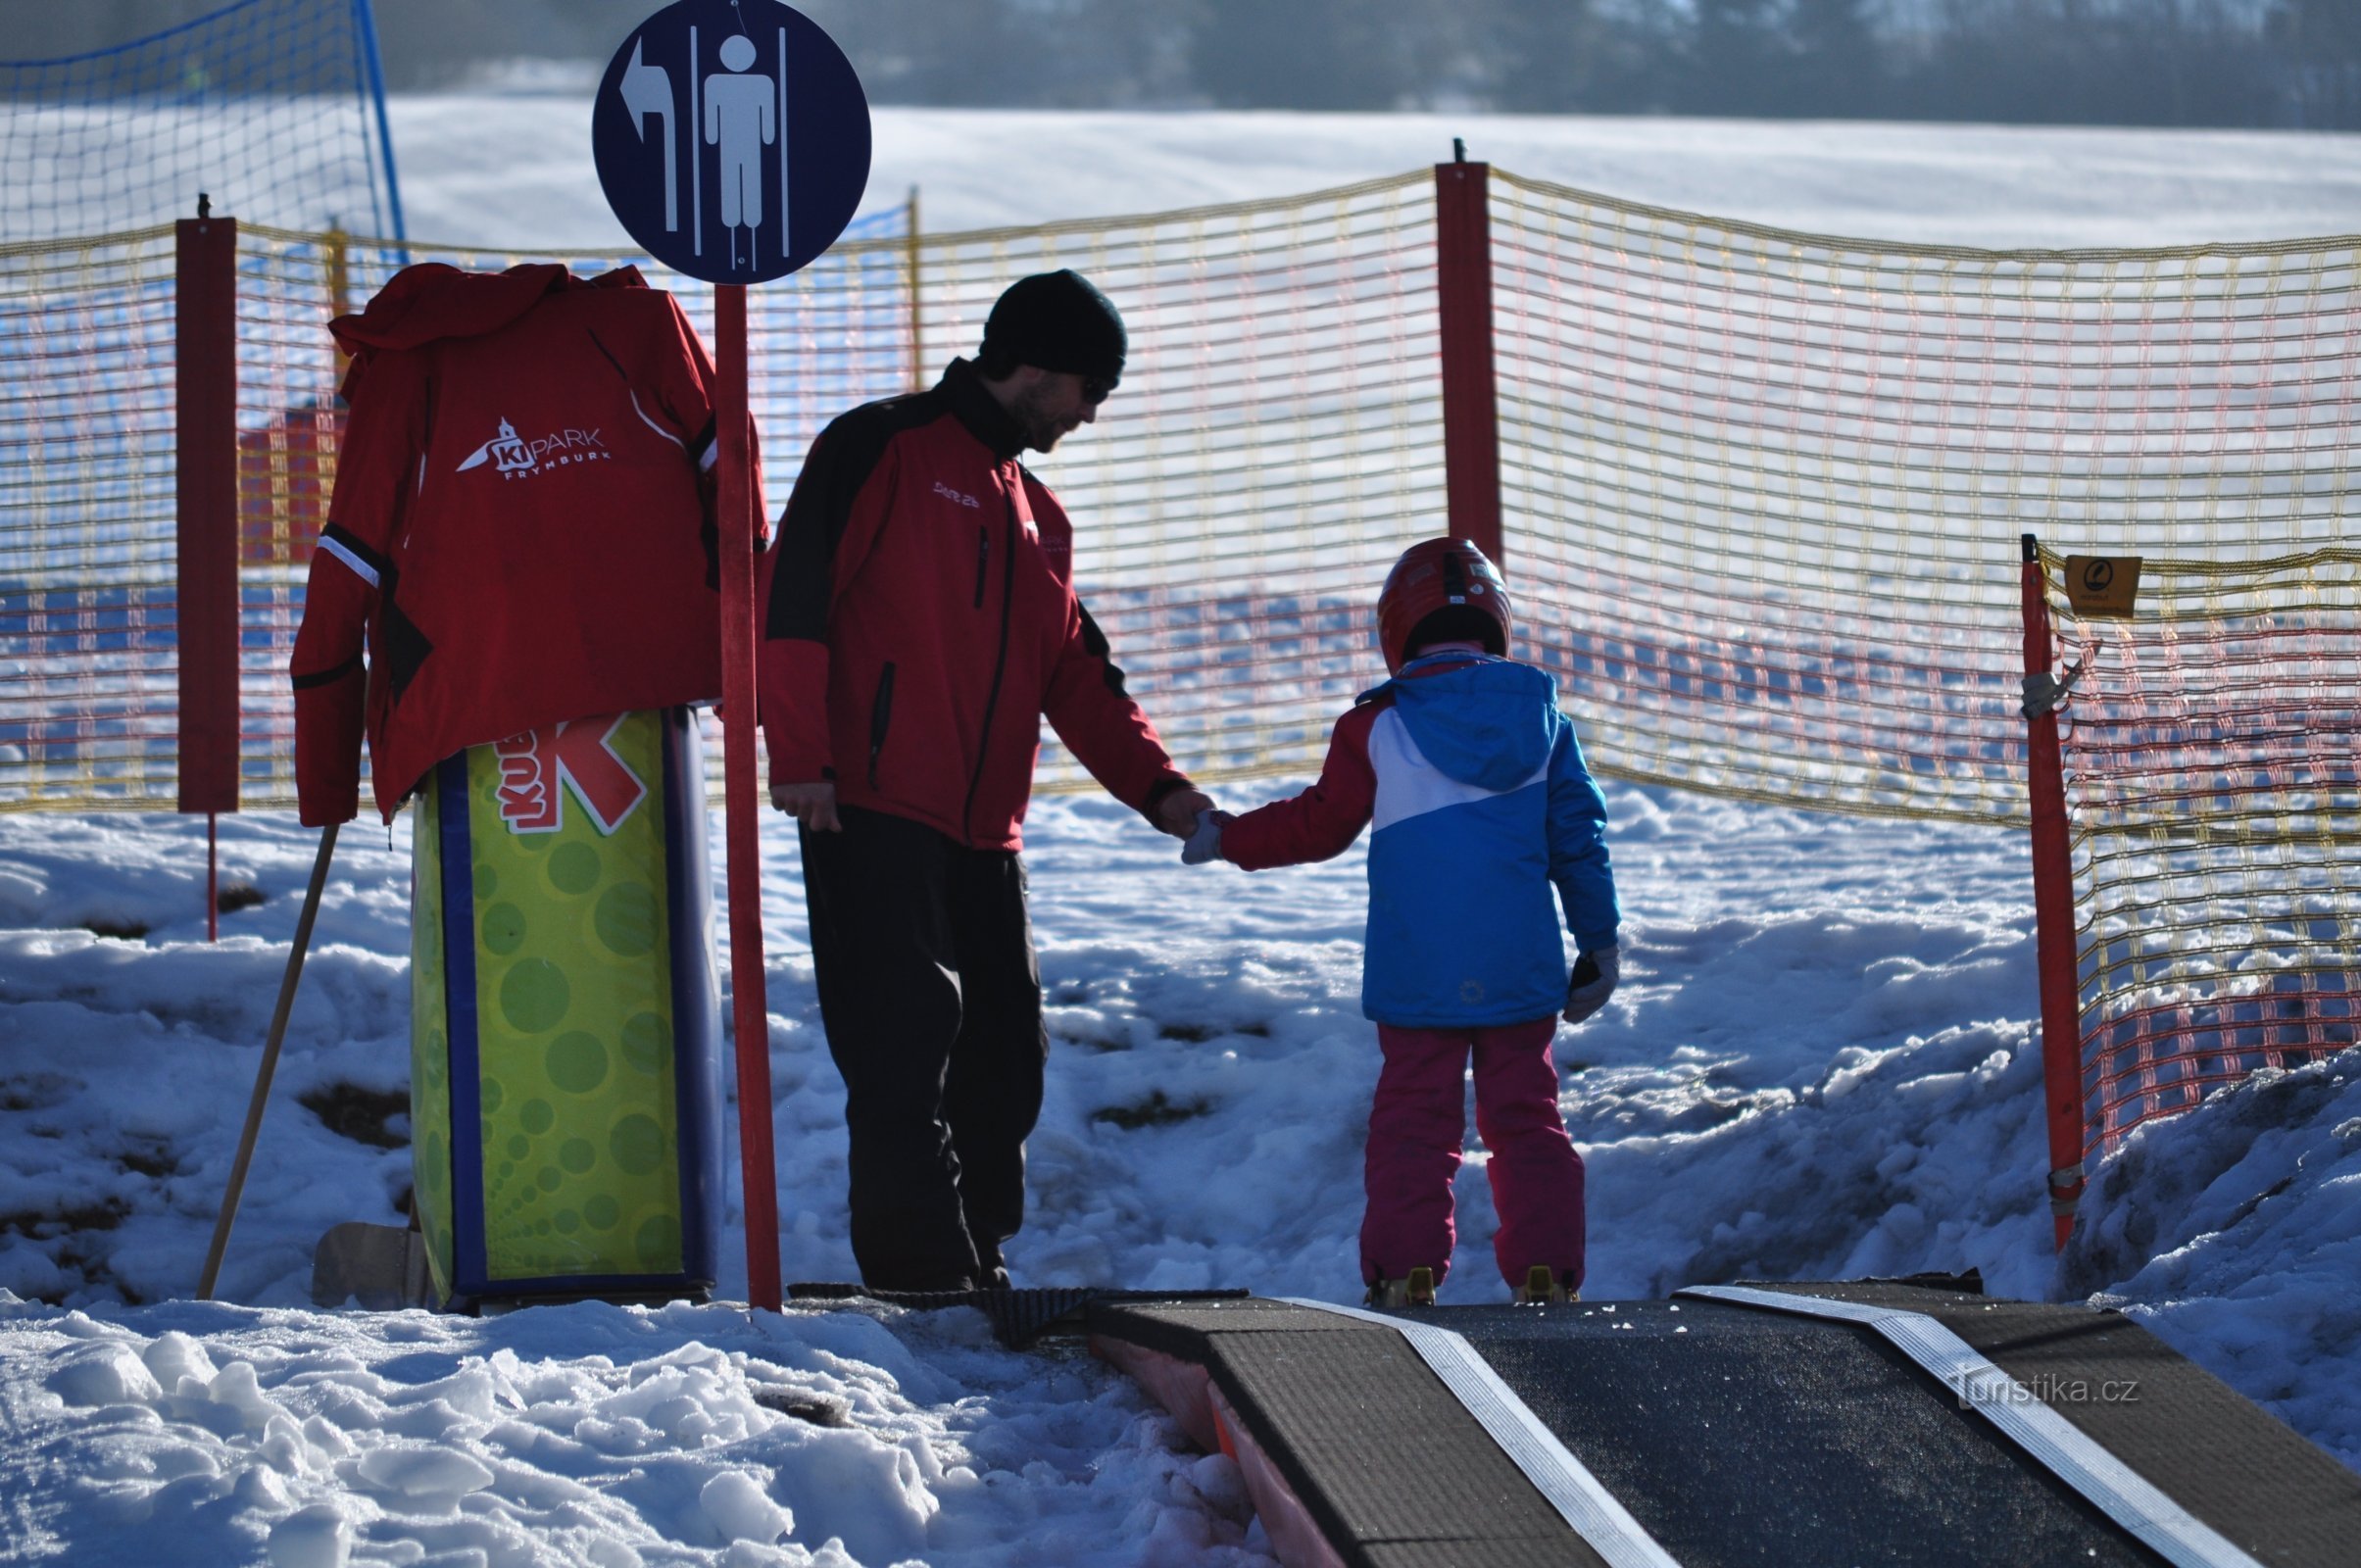 vi hjælper altid gerne med starten på skiløbet